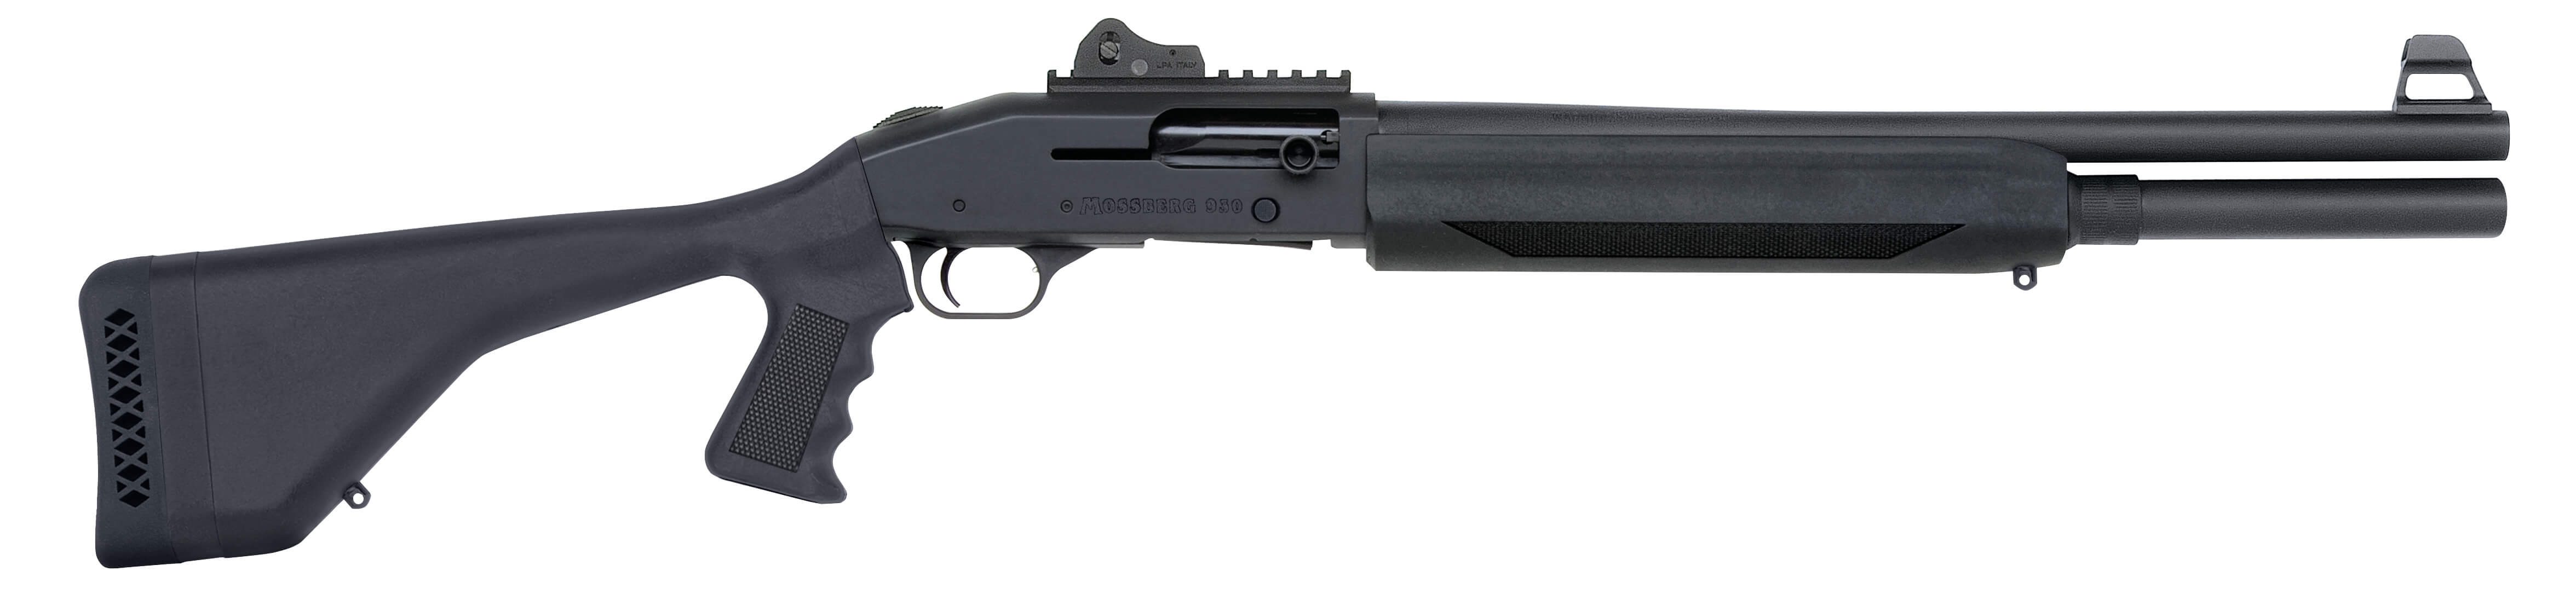 Mossberg 930 shotgun illegal under HB 1240.